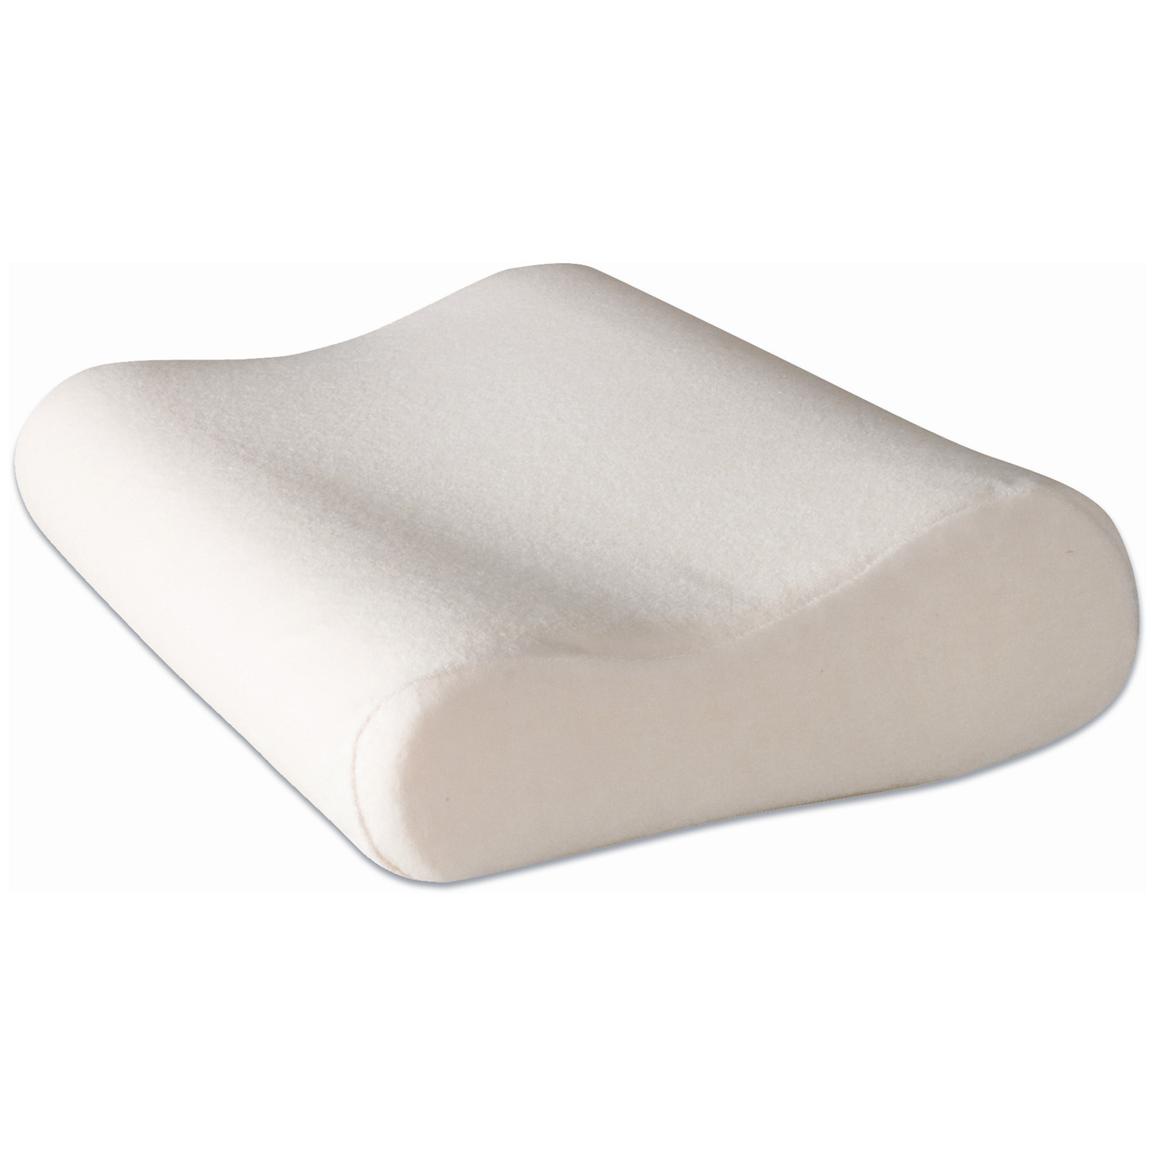 Купить ортопедическую подушку цена. Ортопедическая подушка Memory Foam. Memory Pillow подушка. Memory Foam подушка. Ортопедическая подушка Фелисити.